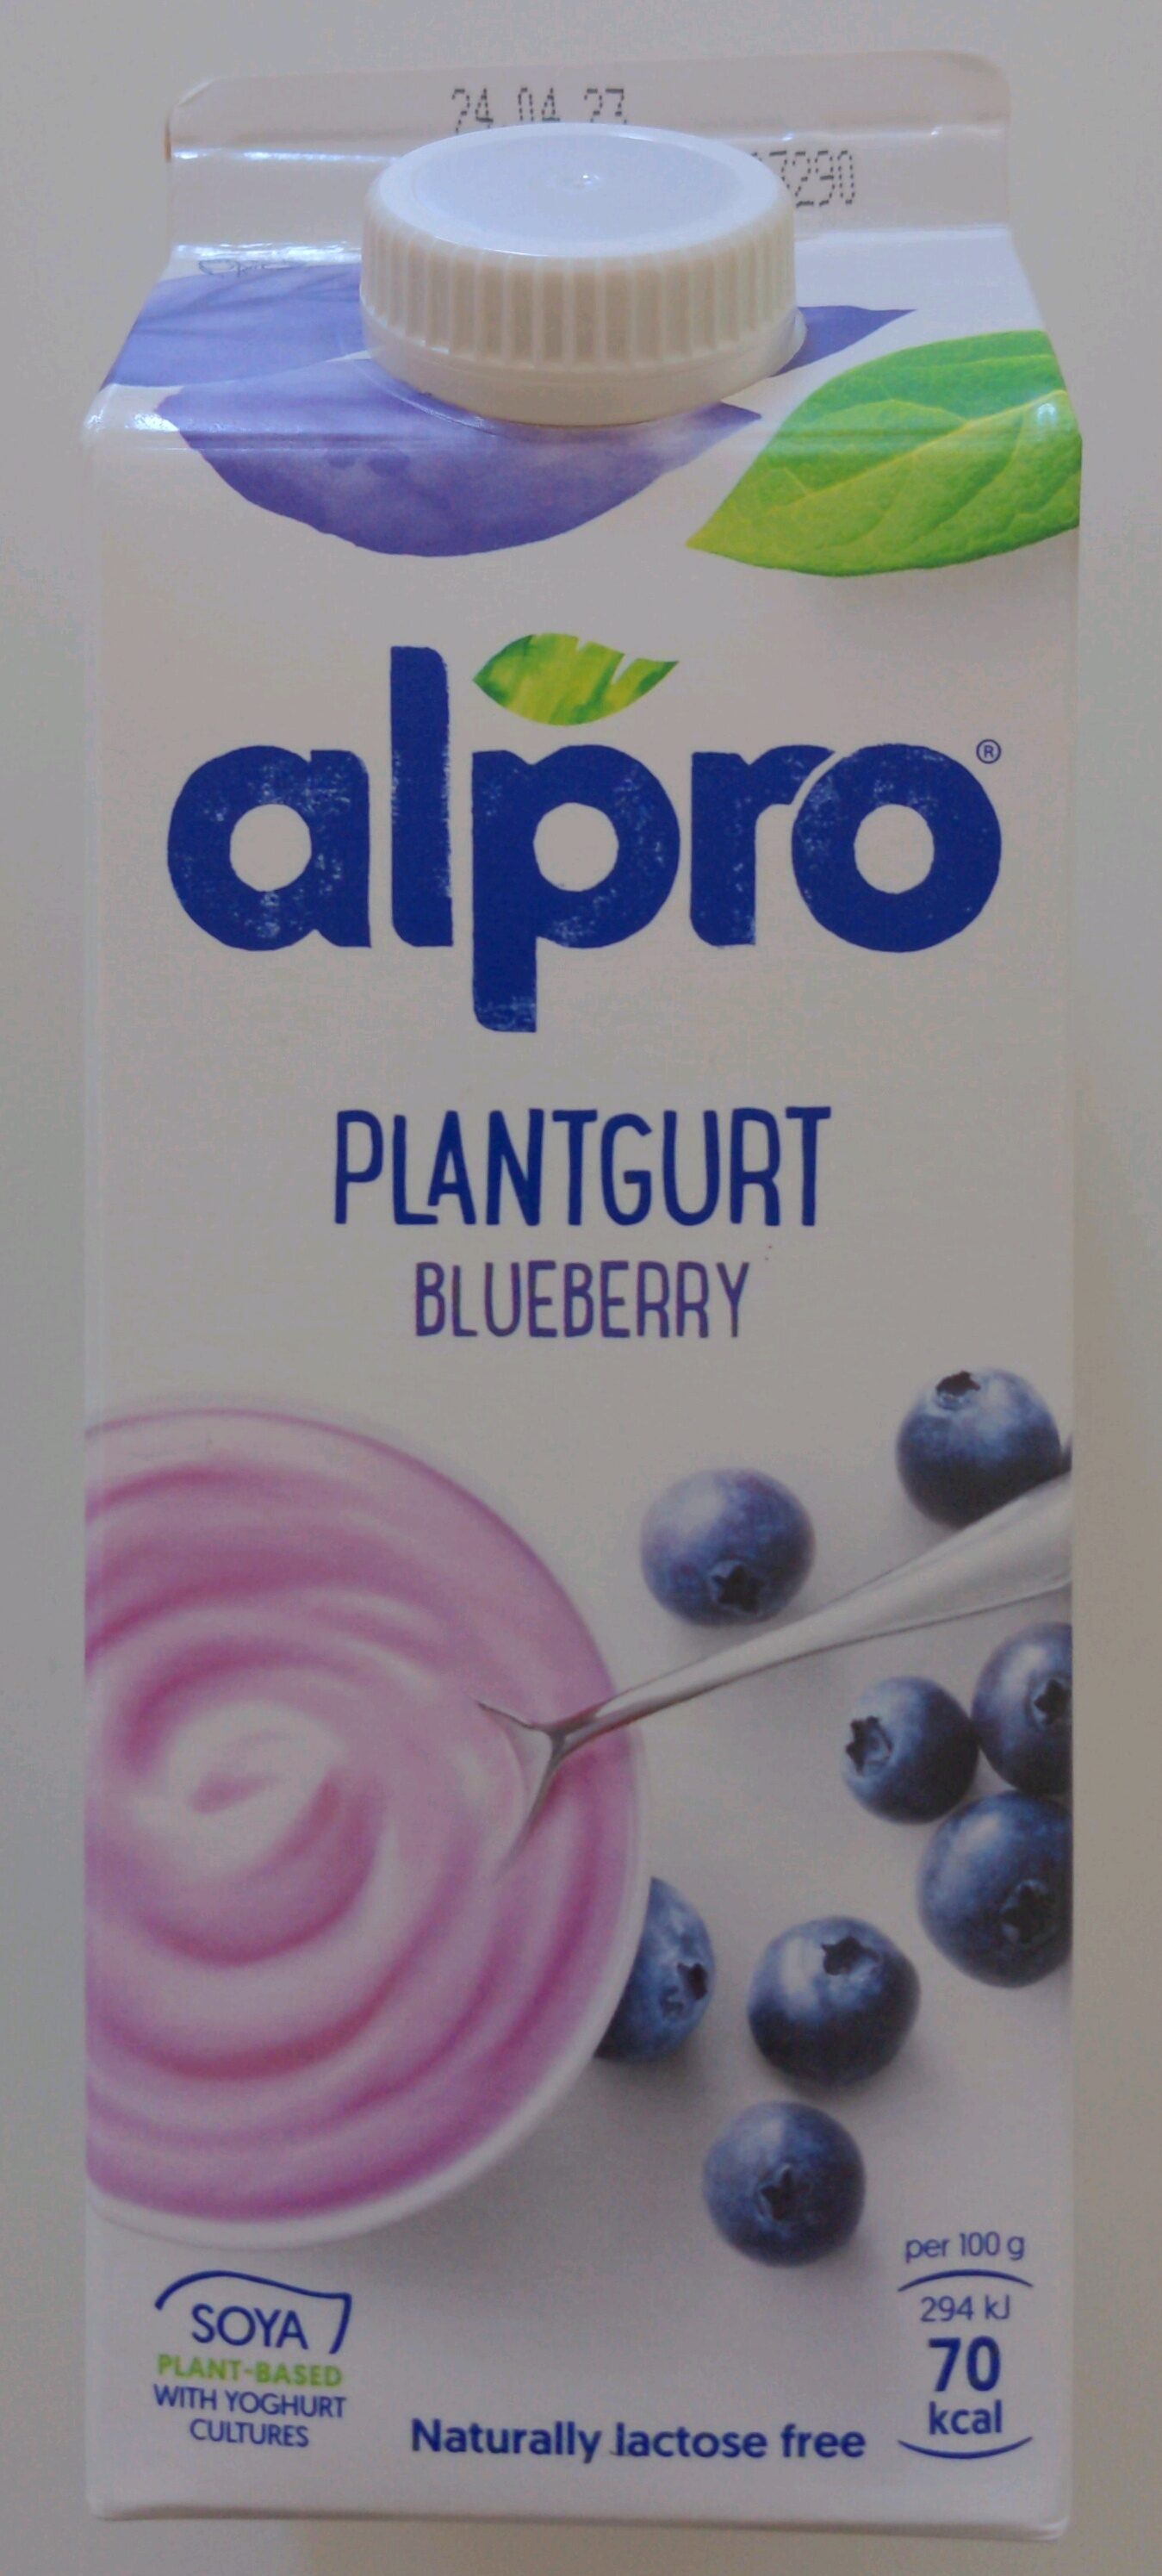 Plantgurt blueberry soya - Tuote